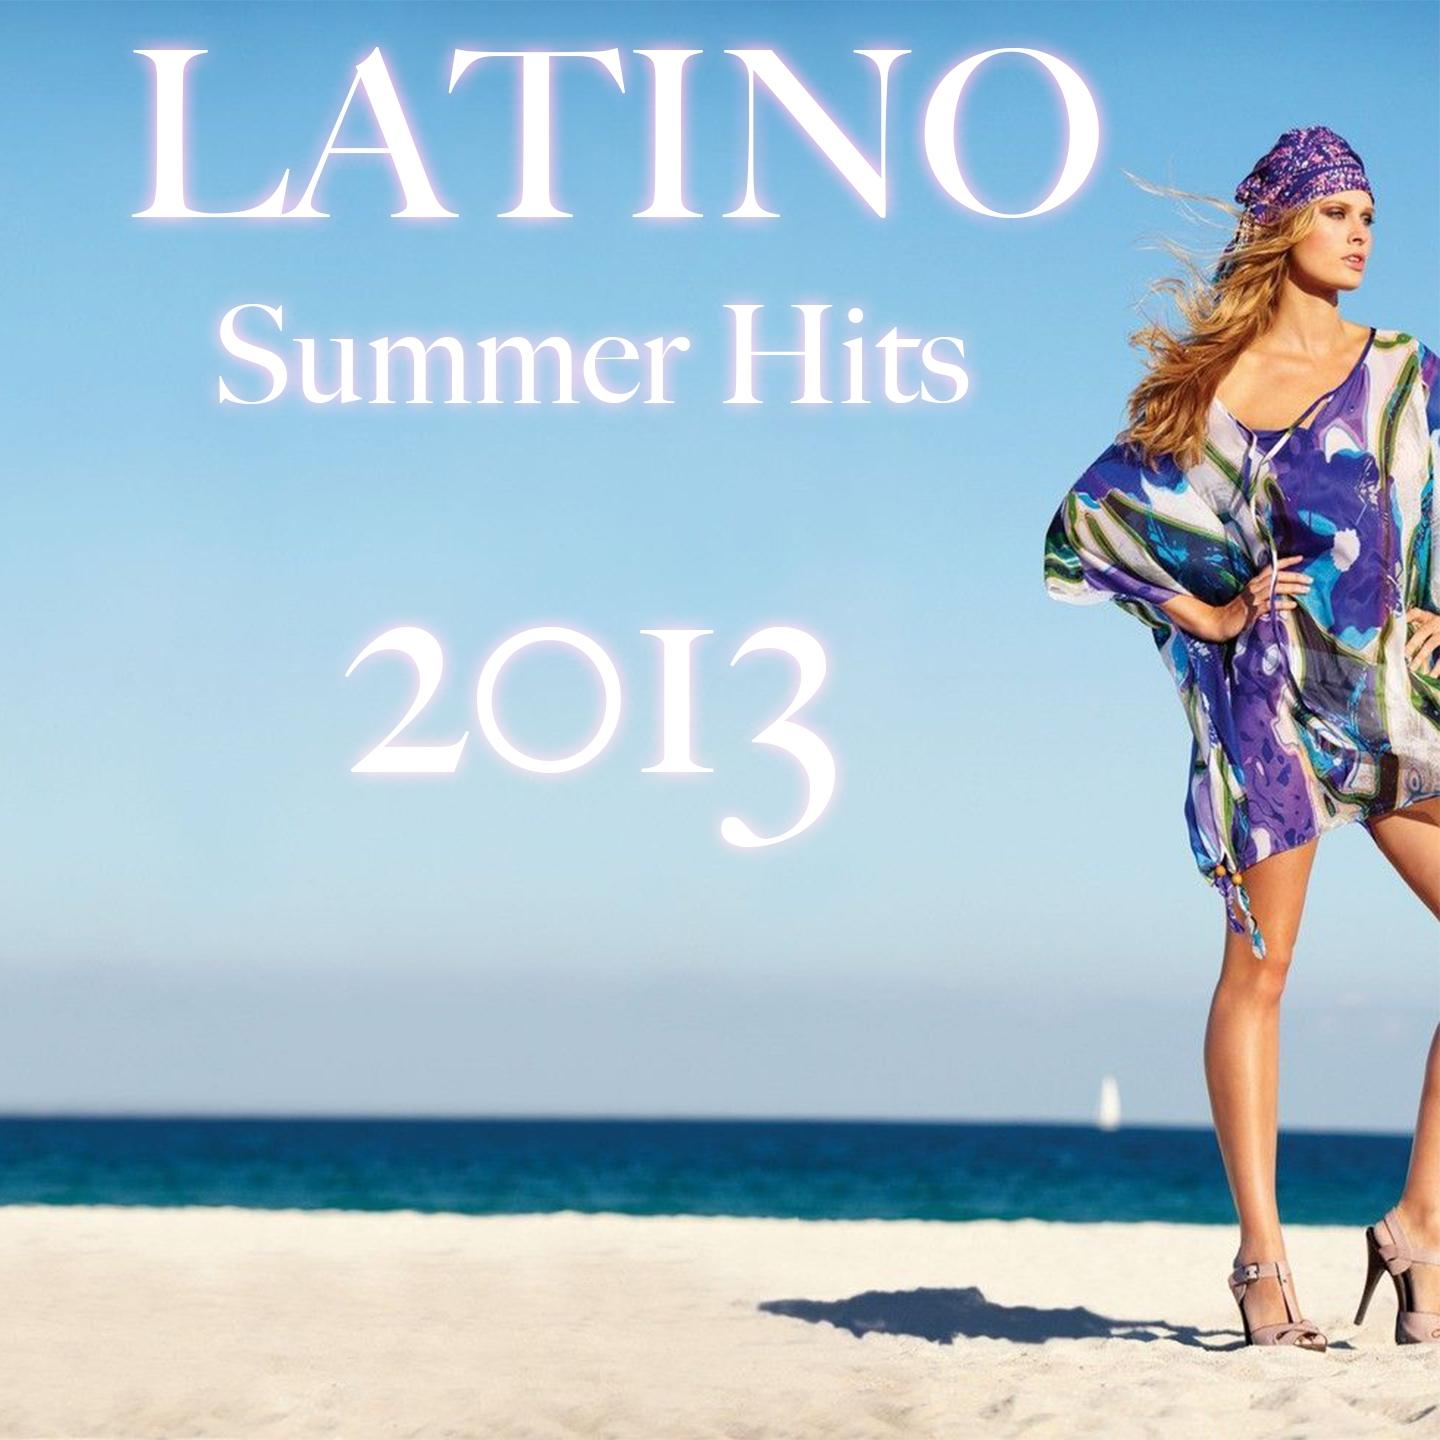 Latino Summer Hits 2013